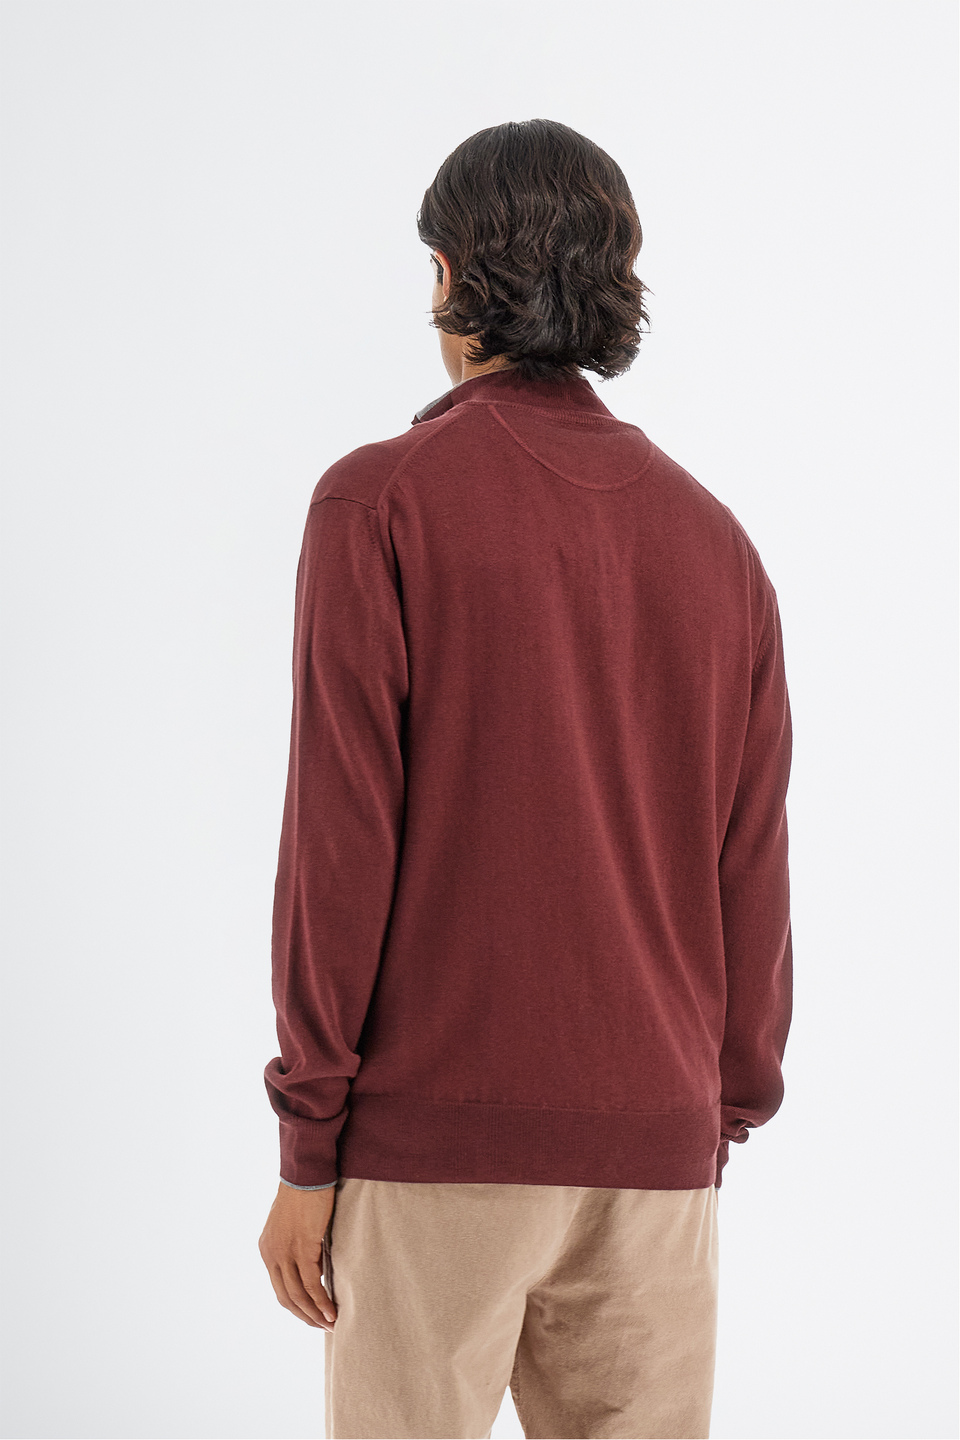 Maglia tricot da uomo a maniche lunghe in cotone misto lana regular fit con scollo a zip | La Martina - Official Online Shop